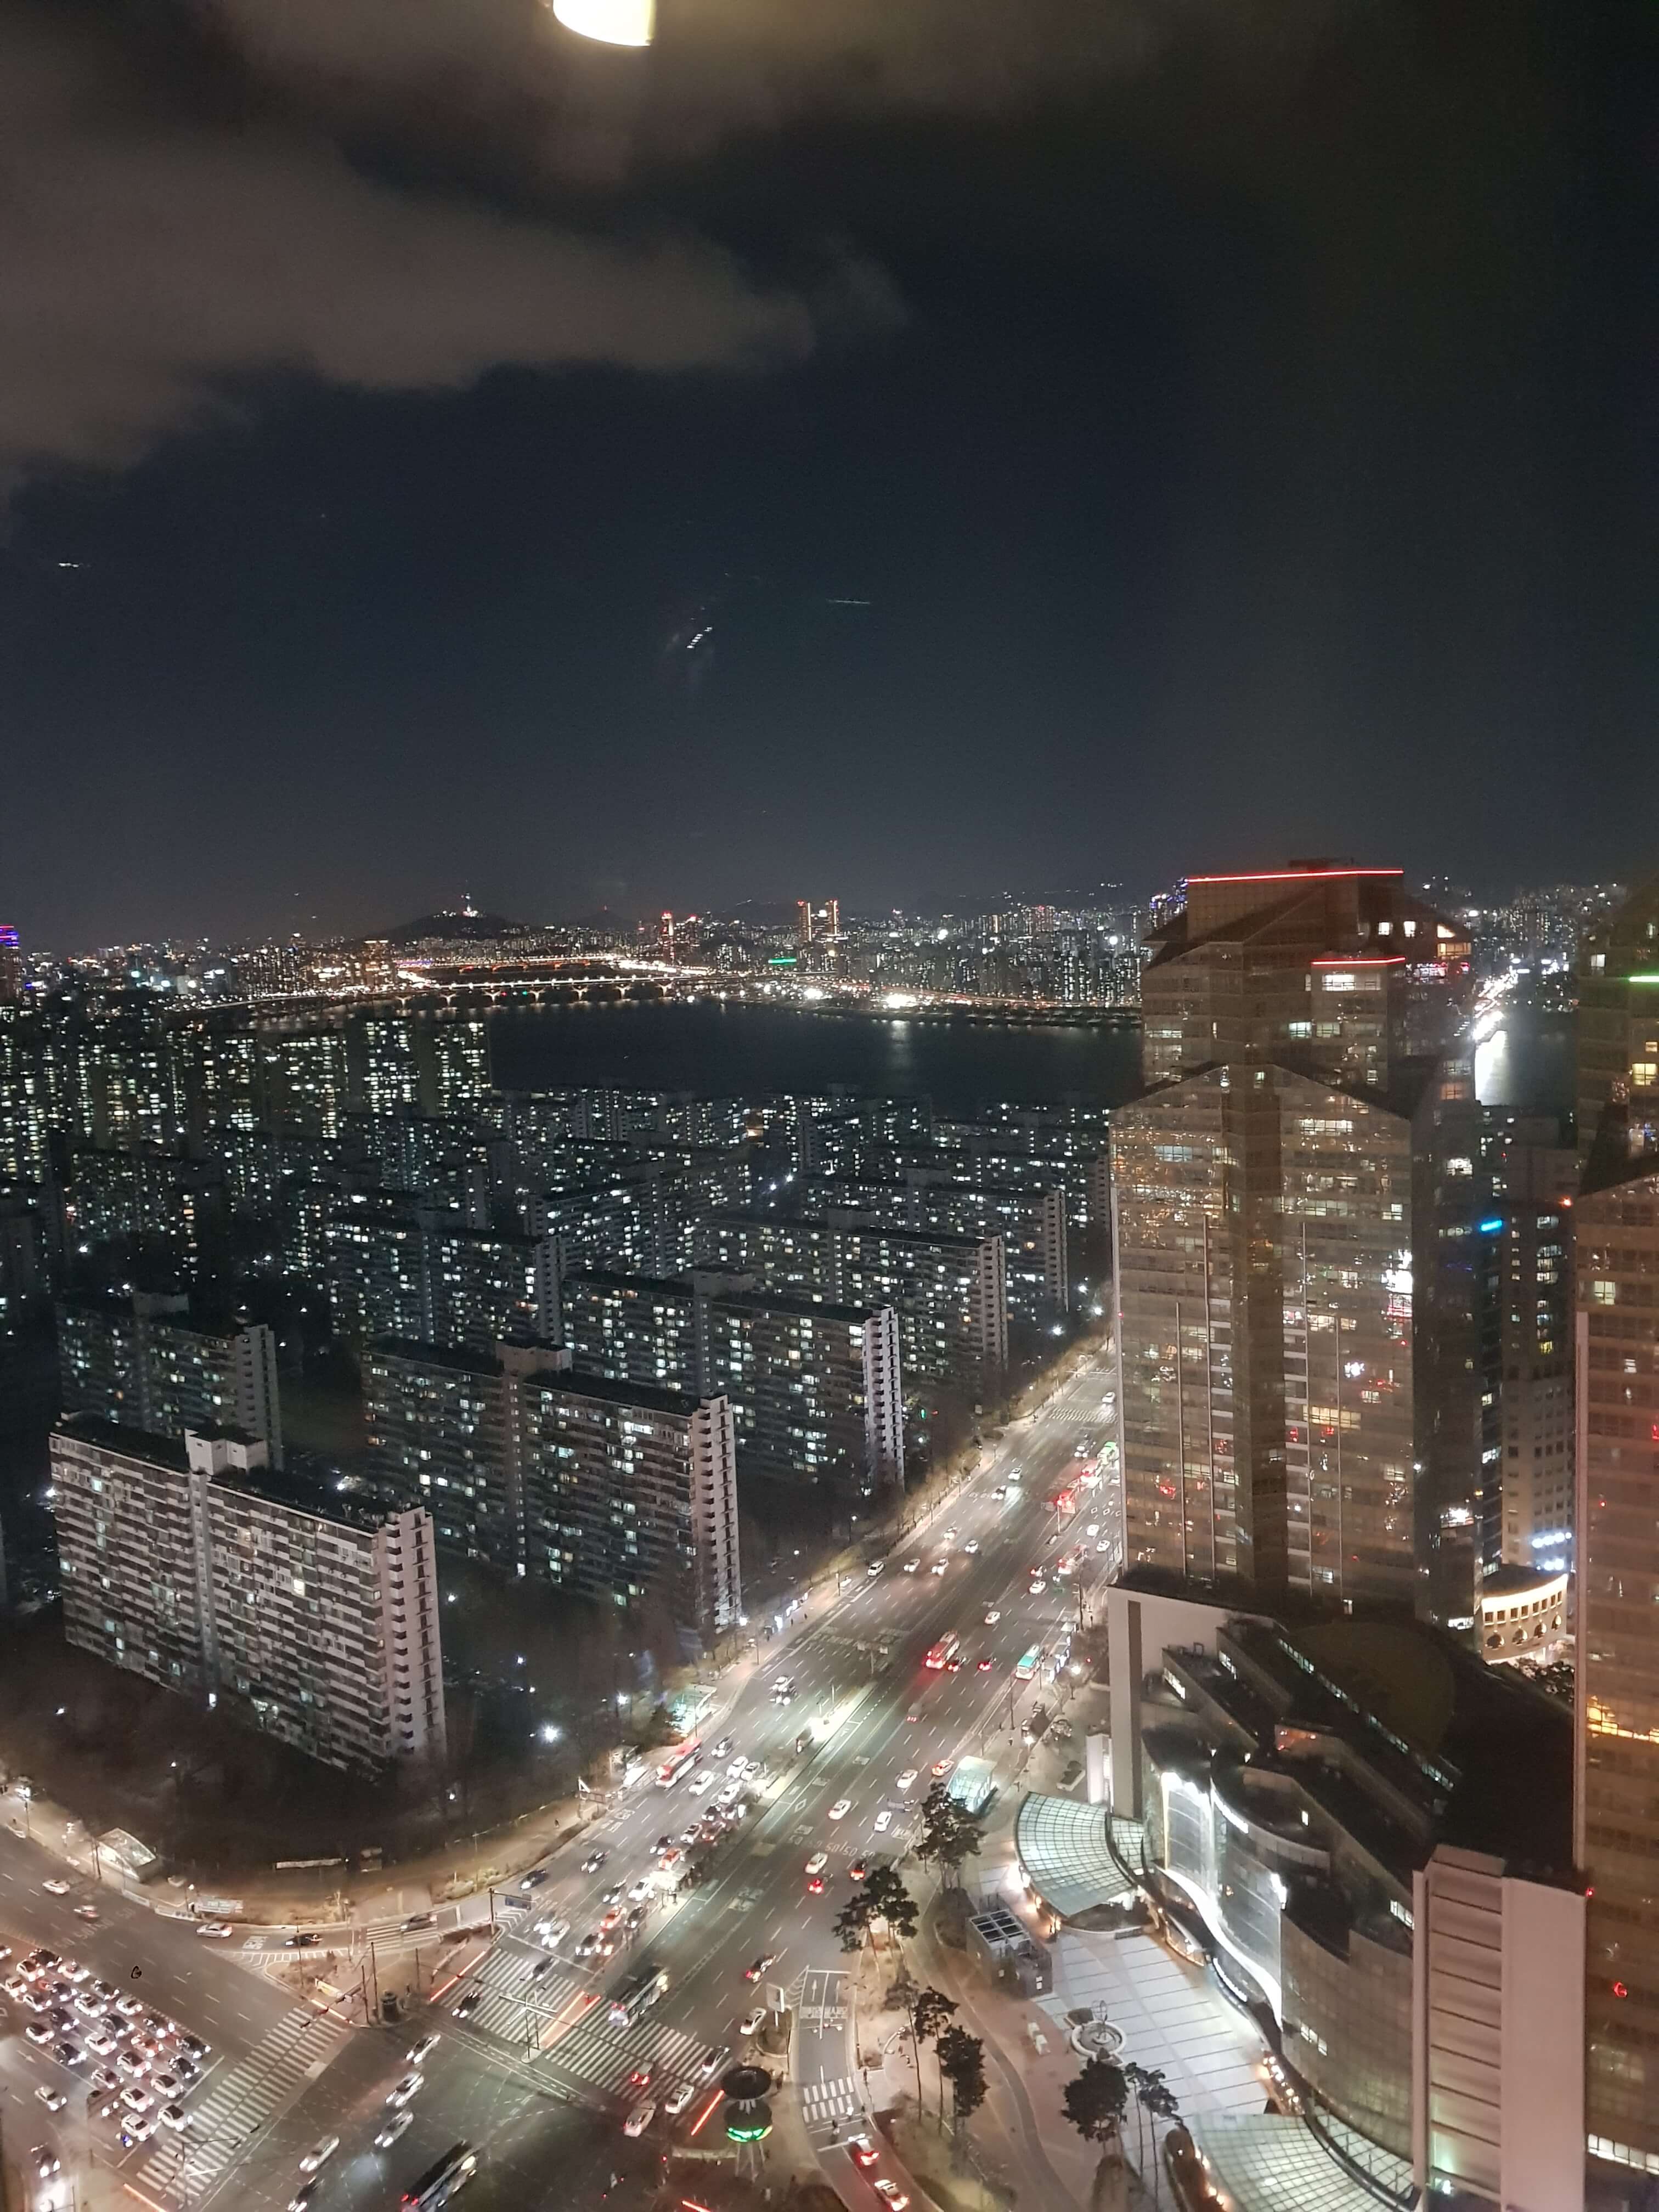 Sky31에서 볼 수 있는 서울 야경